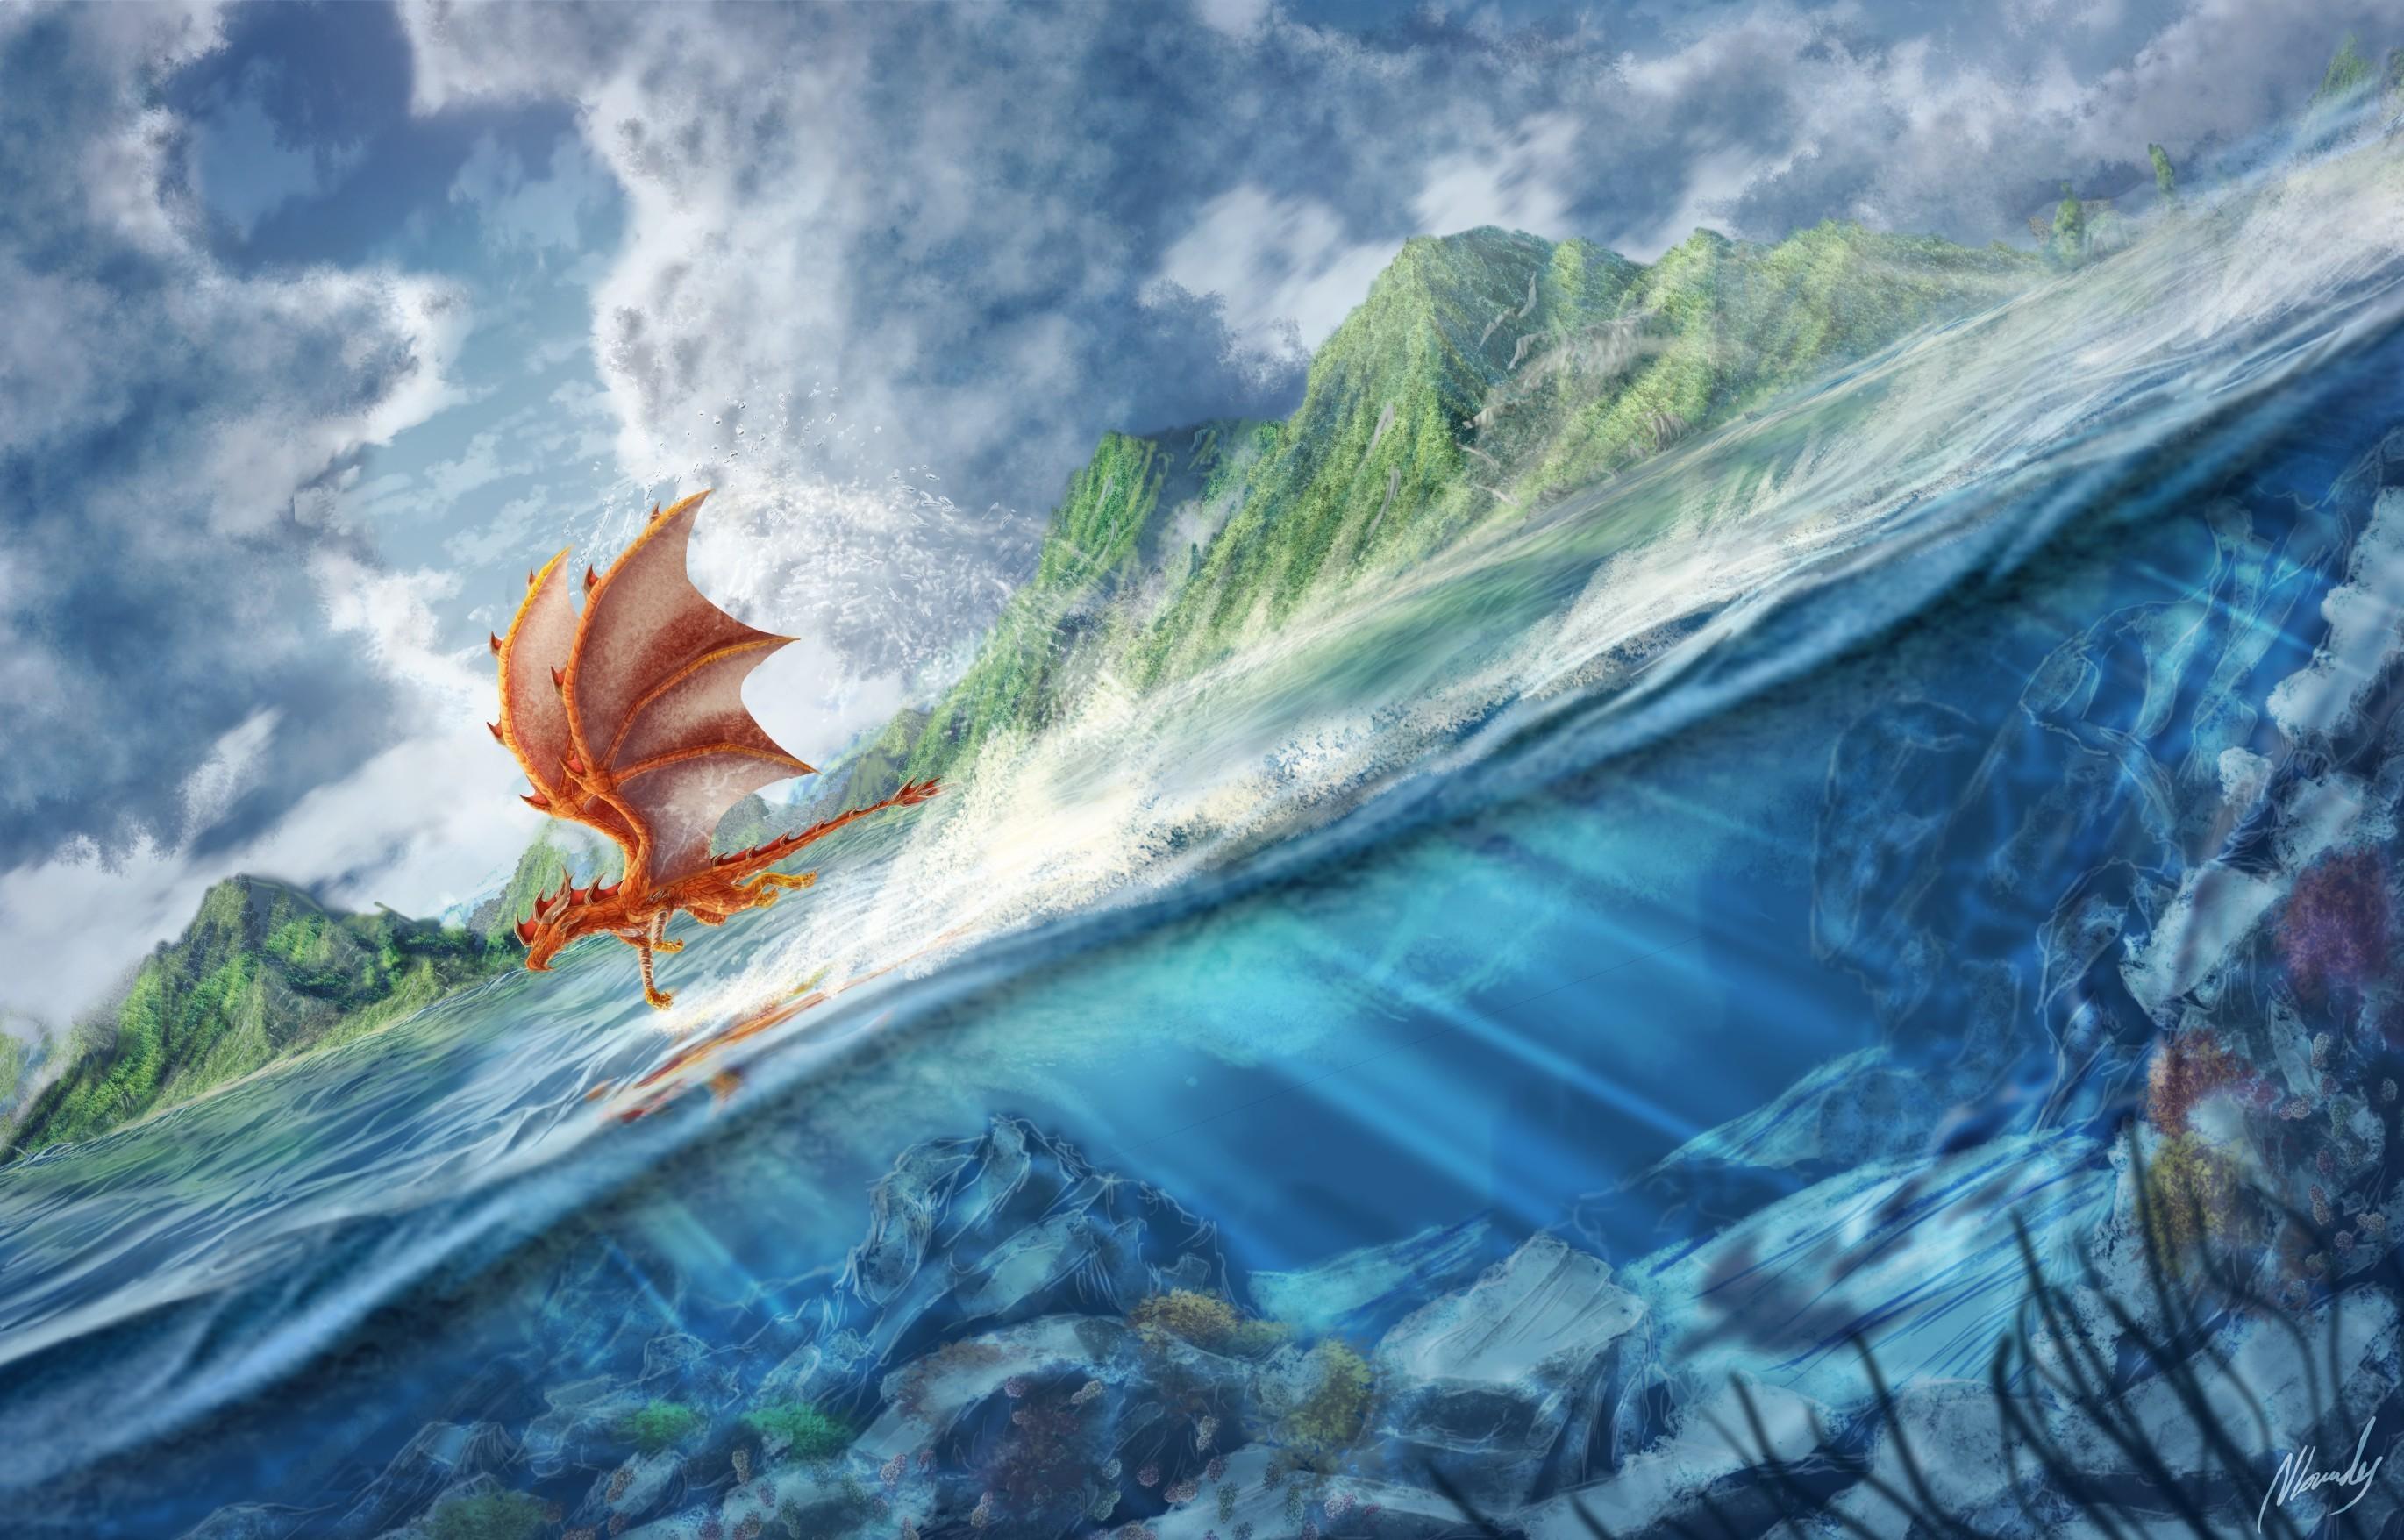 2741 x 1756 · jpeg - Ocean sea underwater fantasy art dragons flight wallpaper | 2741x1756 ...